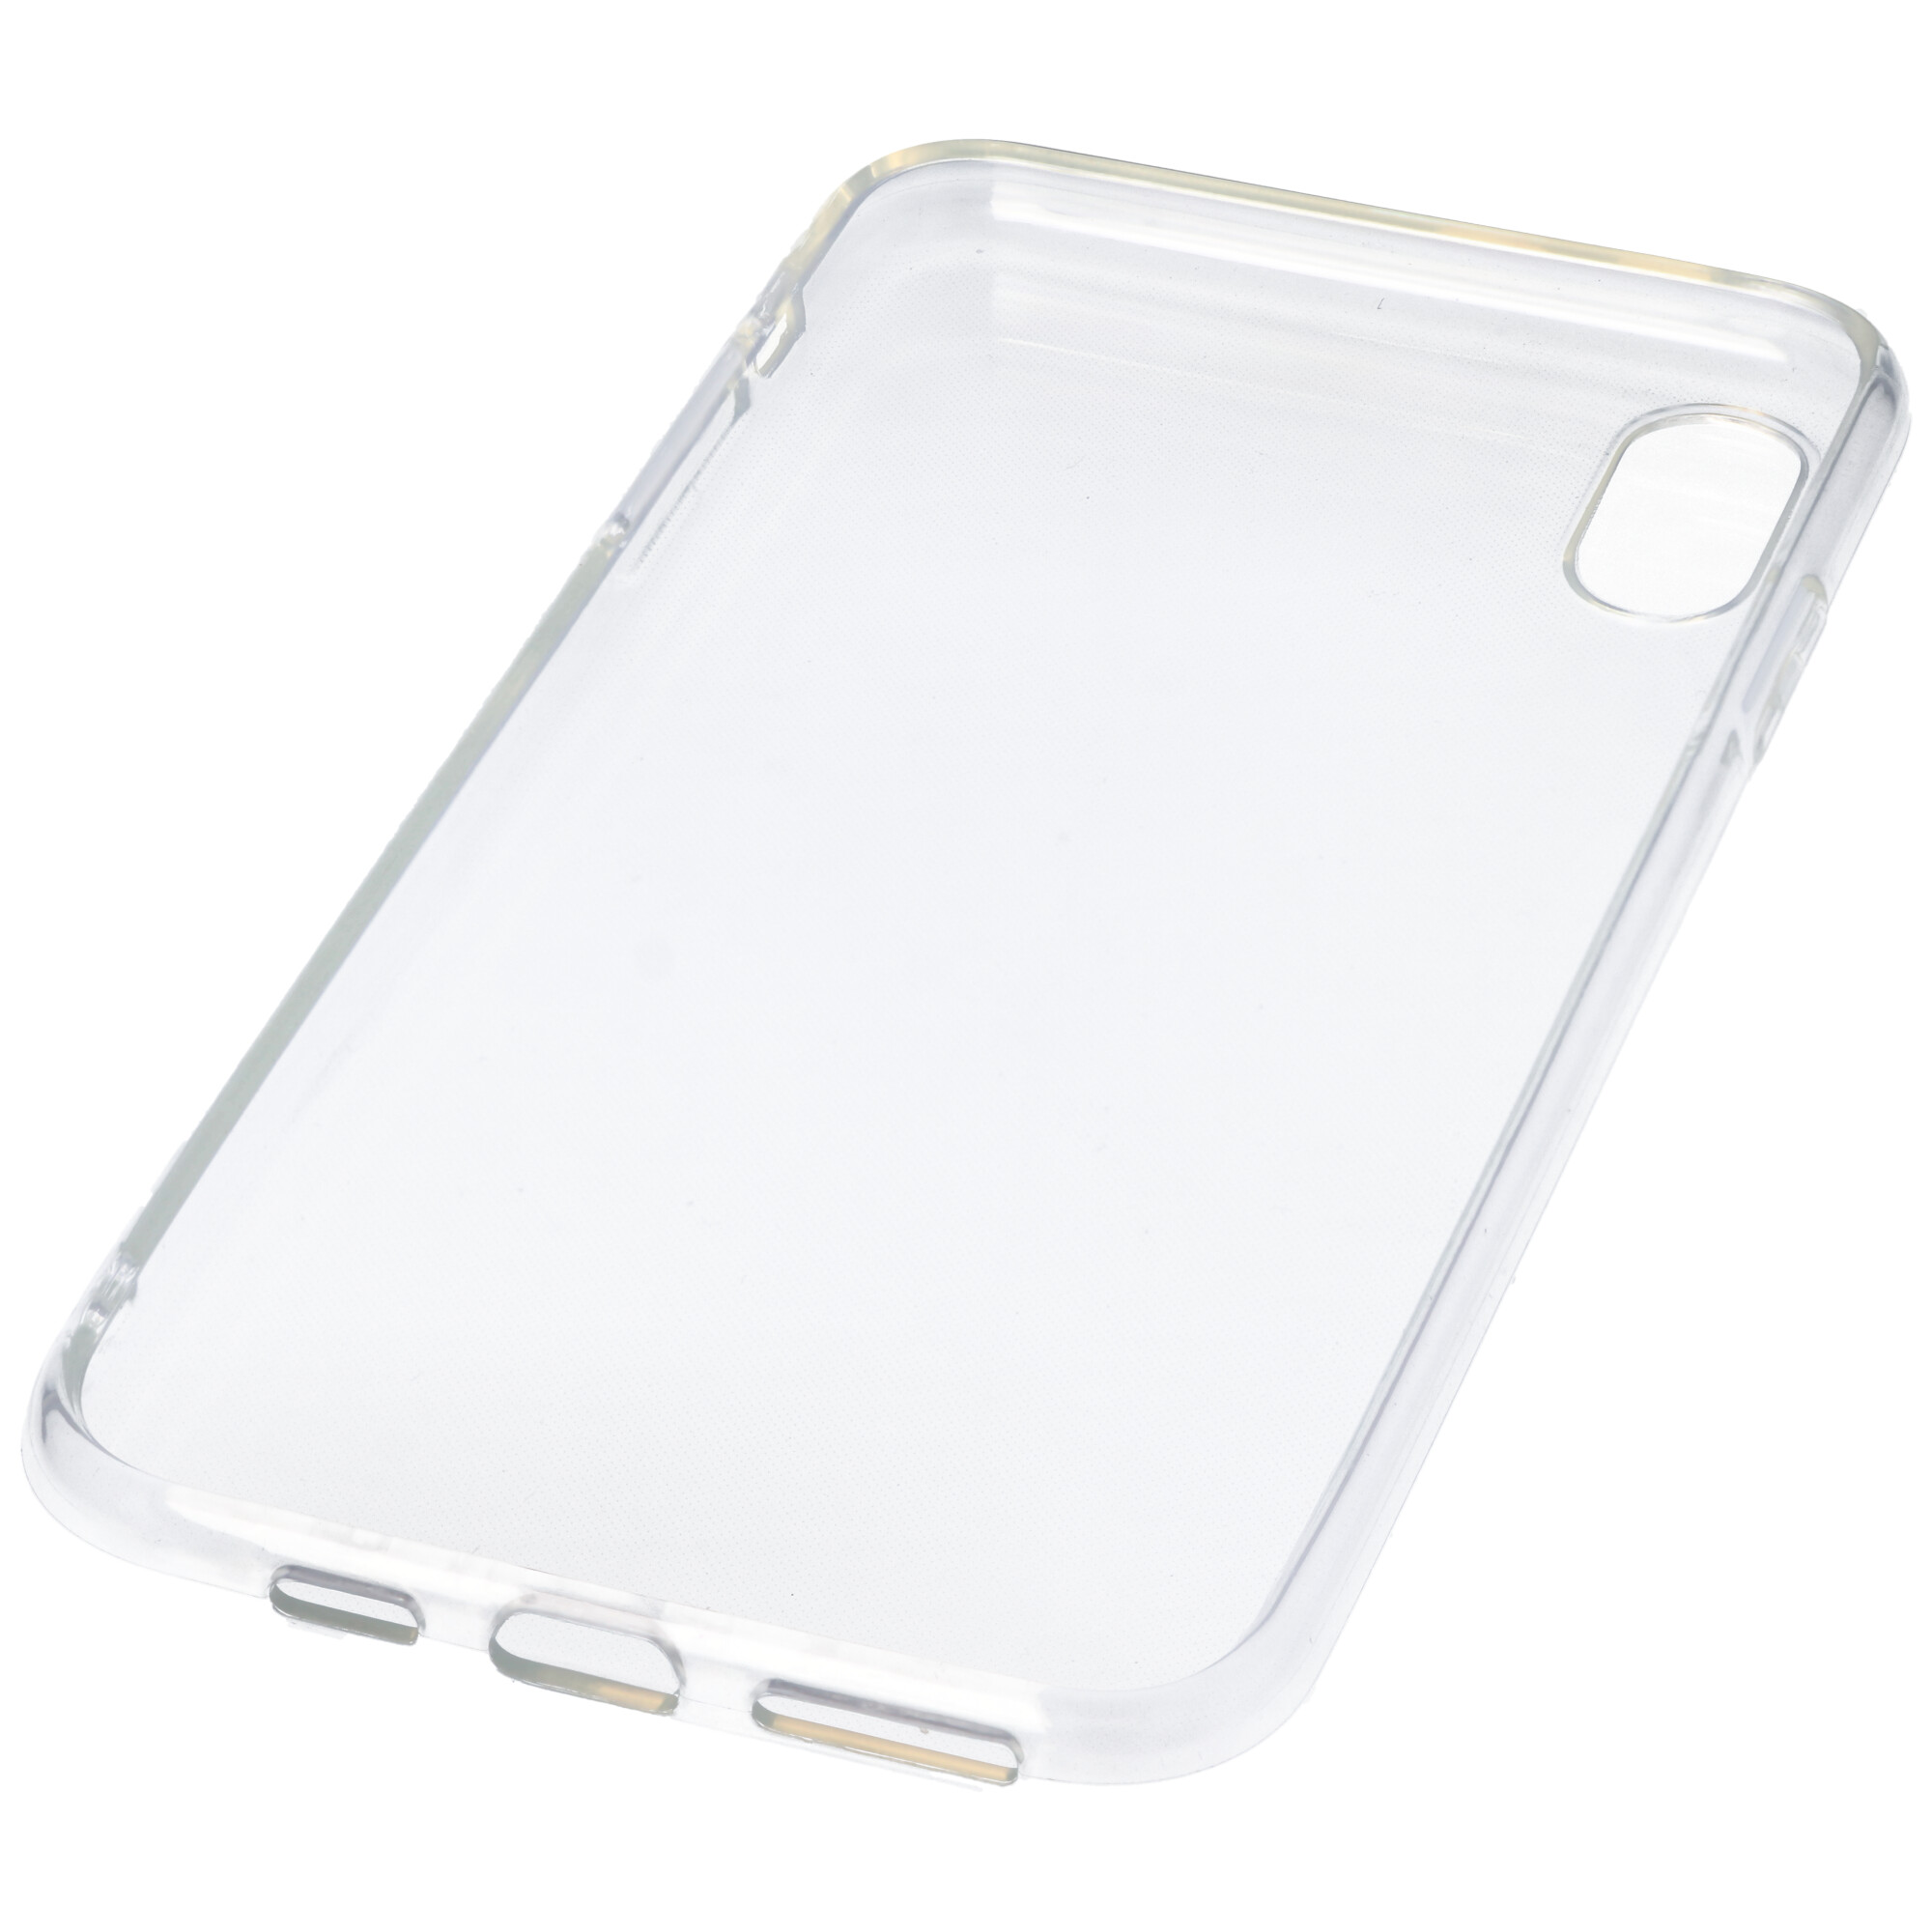 Hülle passend für Apple iPhone XS Max - transparente Schutzhülle, Anti-Gelb Luftkissen Fallschutz Silikon Handyhülle robustes TPU Case